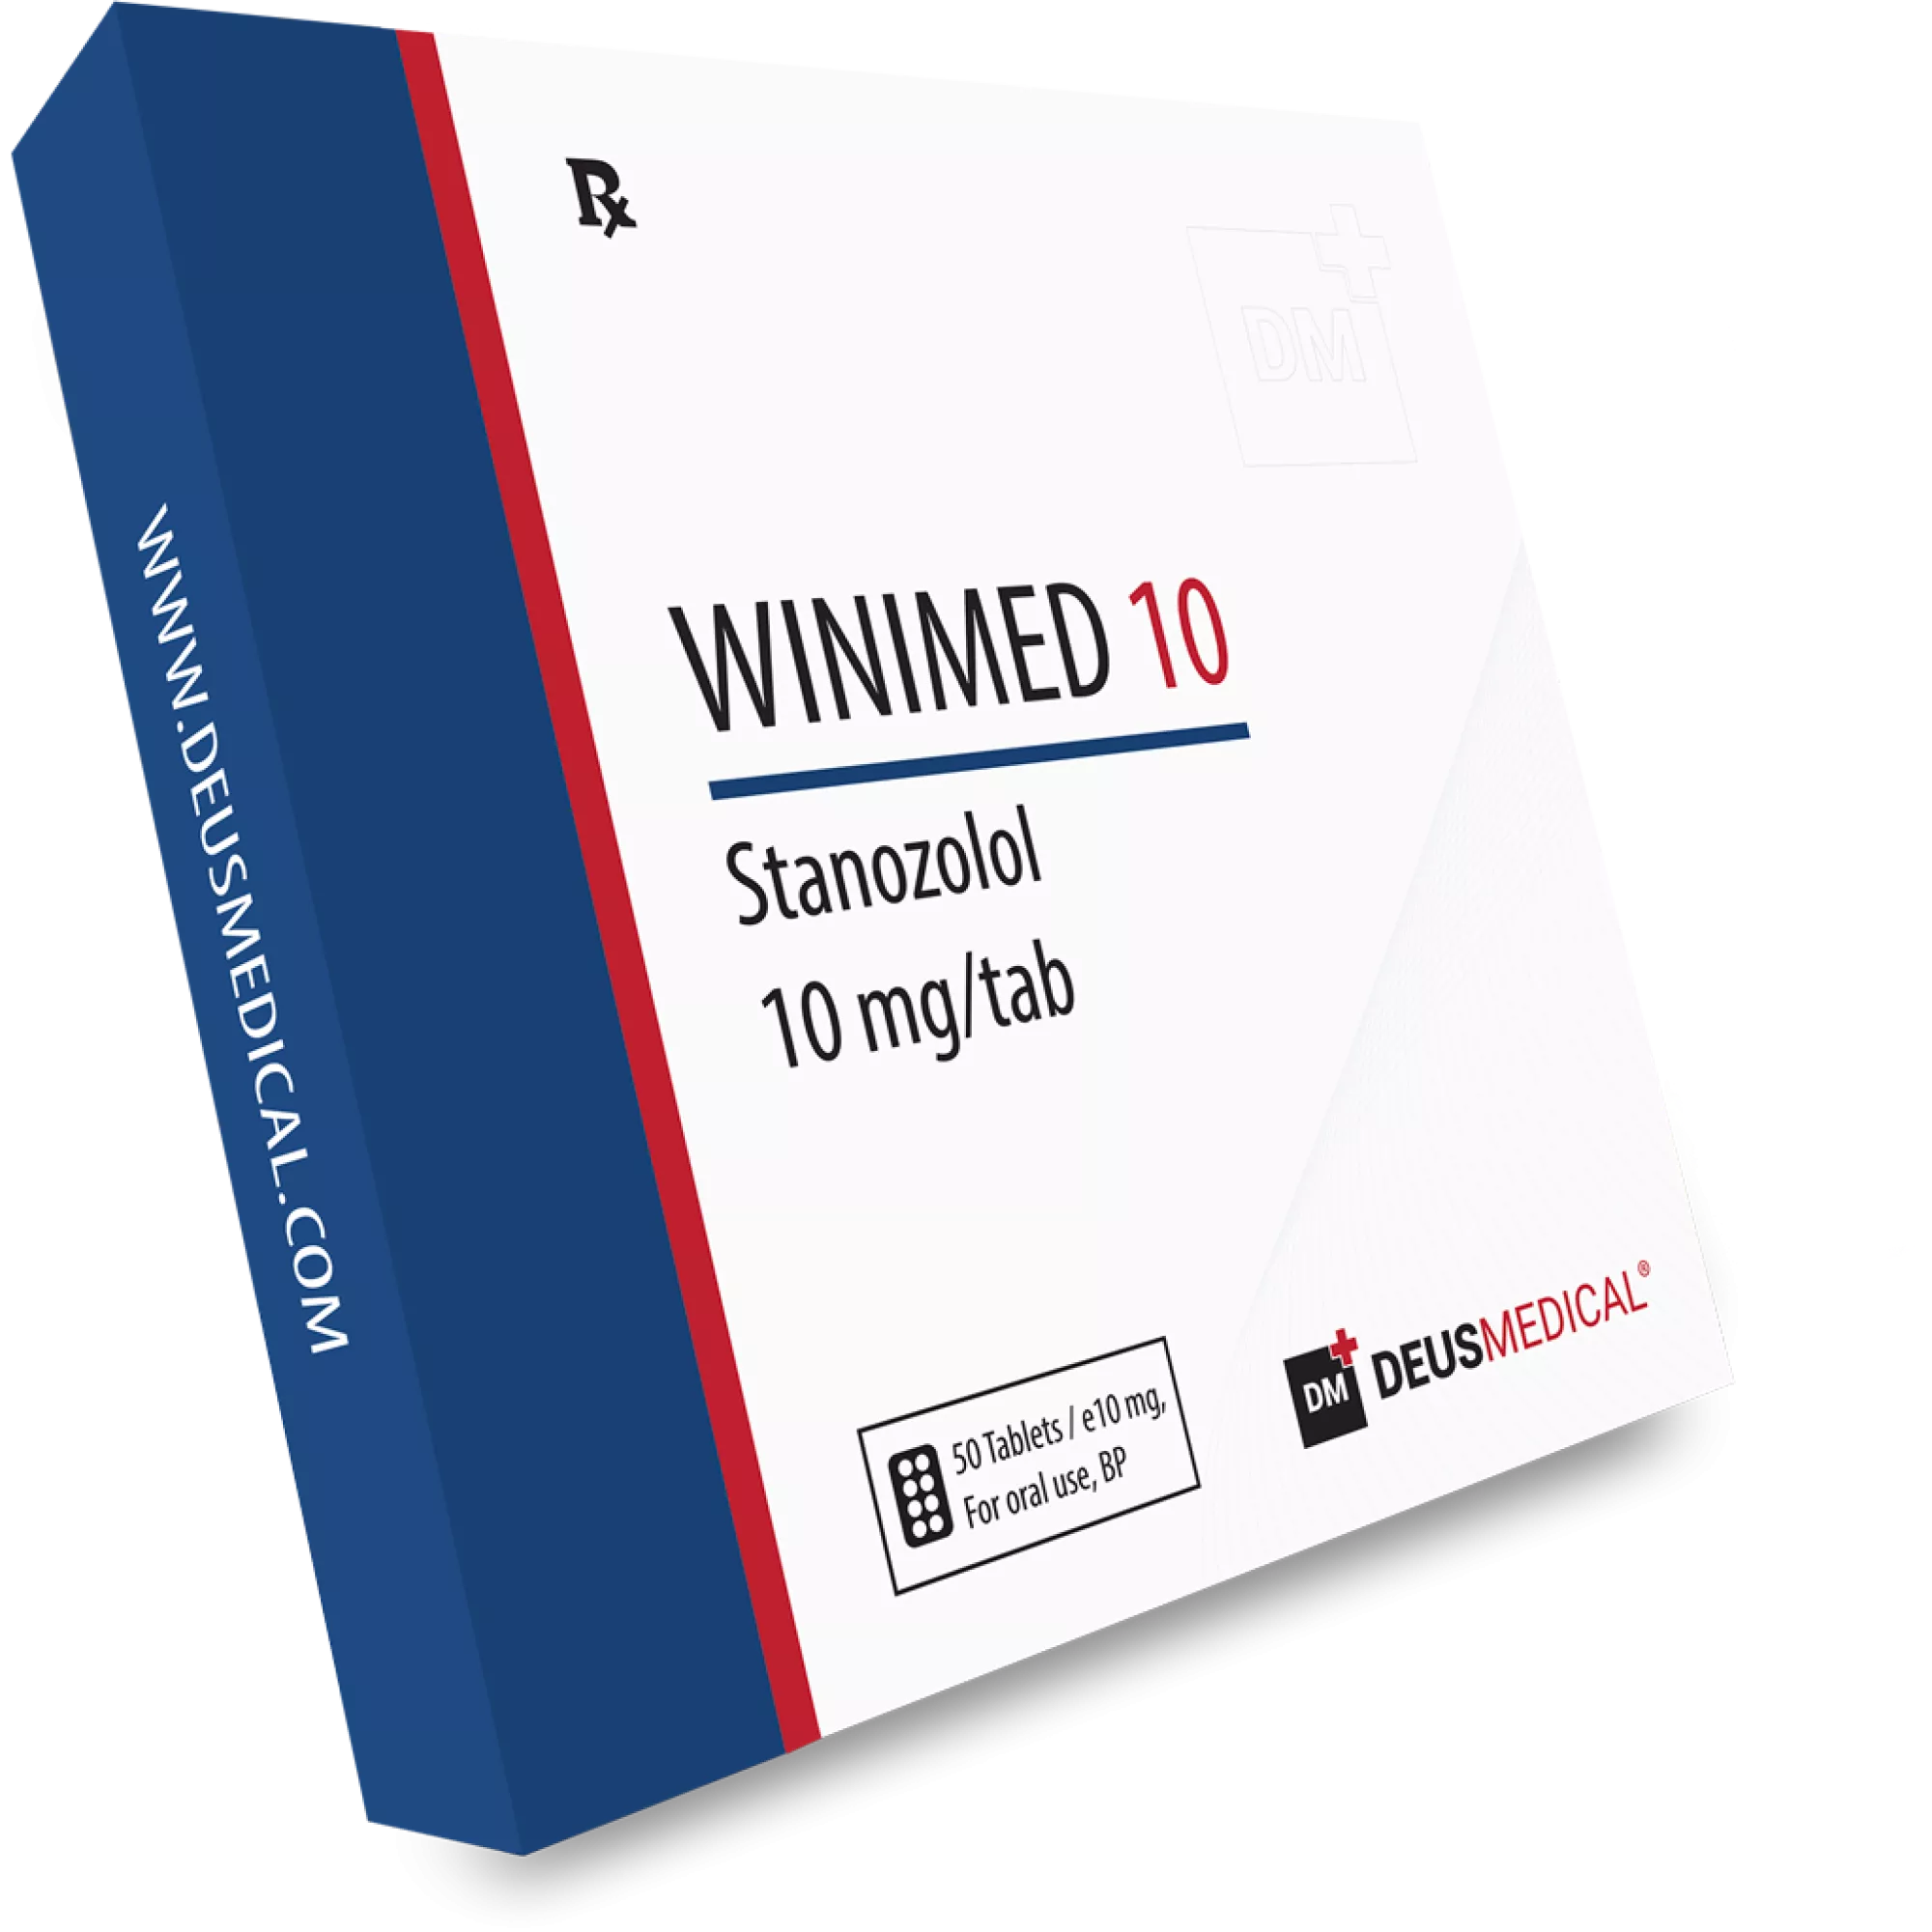 WINIMED 10 (Stanozolol), Deus Medical, Köp steroider online - www.deuspower.shop